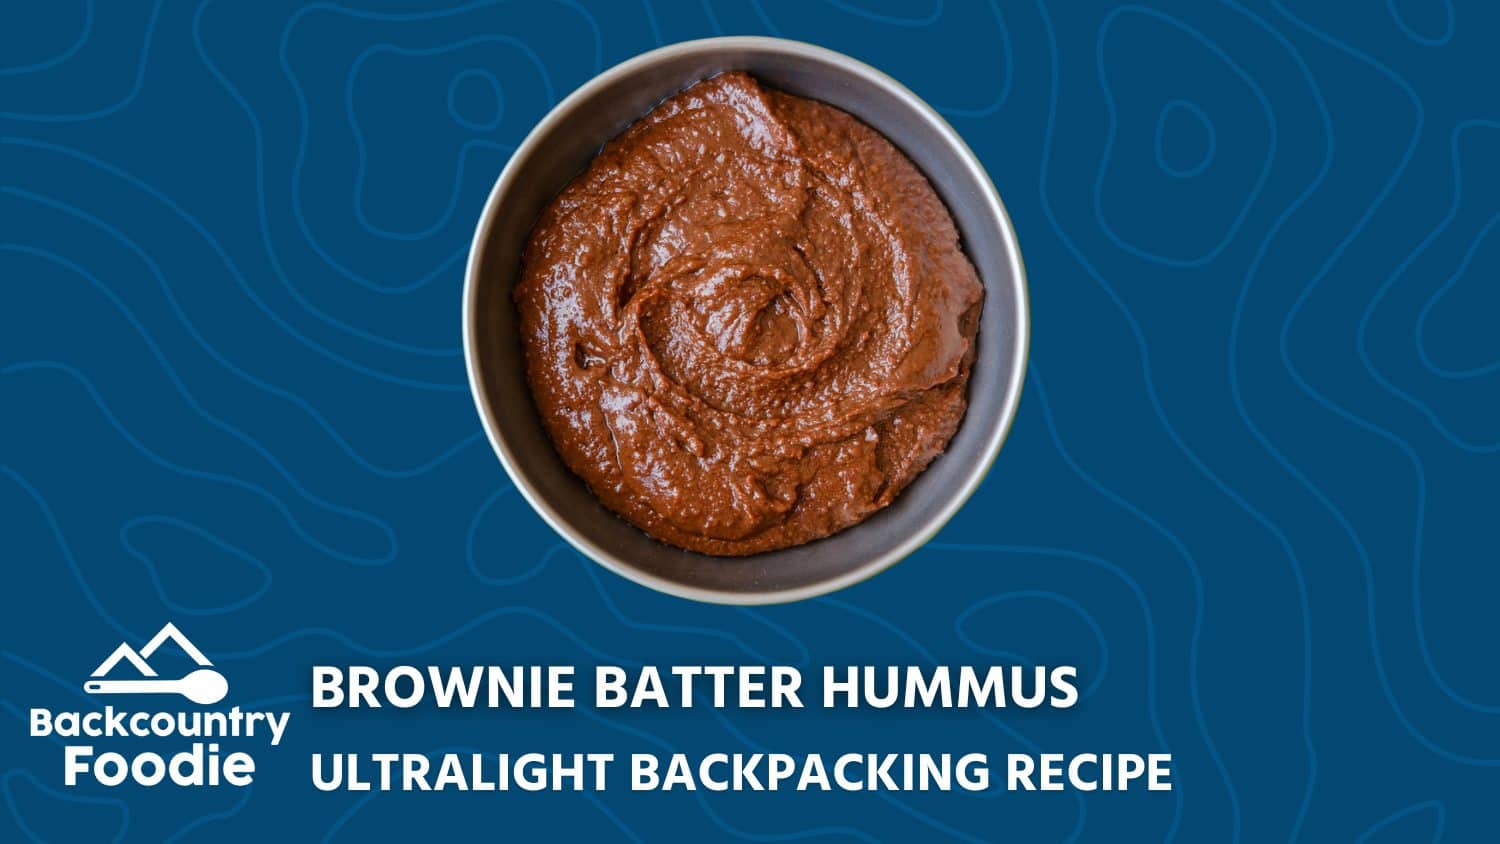 Backcountry Foodie Brownie Batter Hummus Backpacking Dessert Recipe